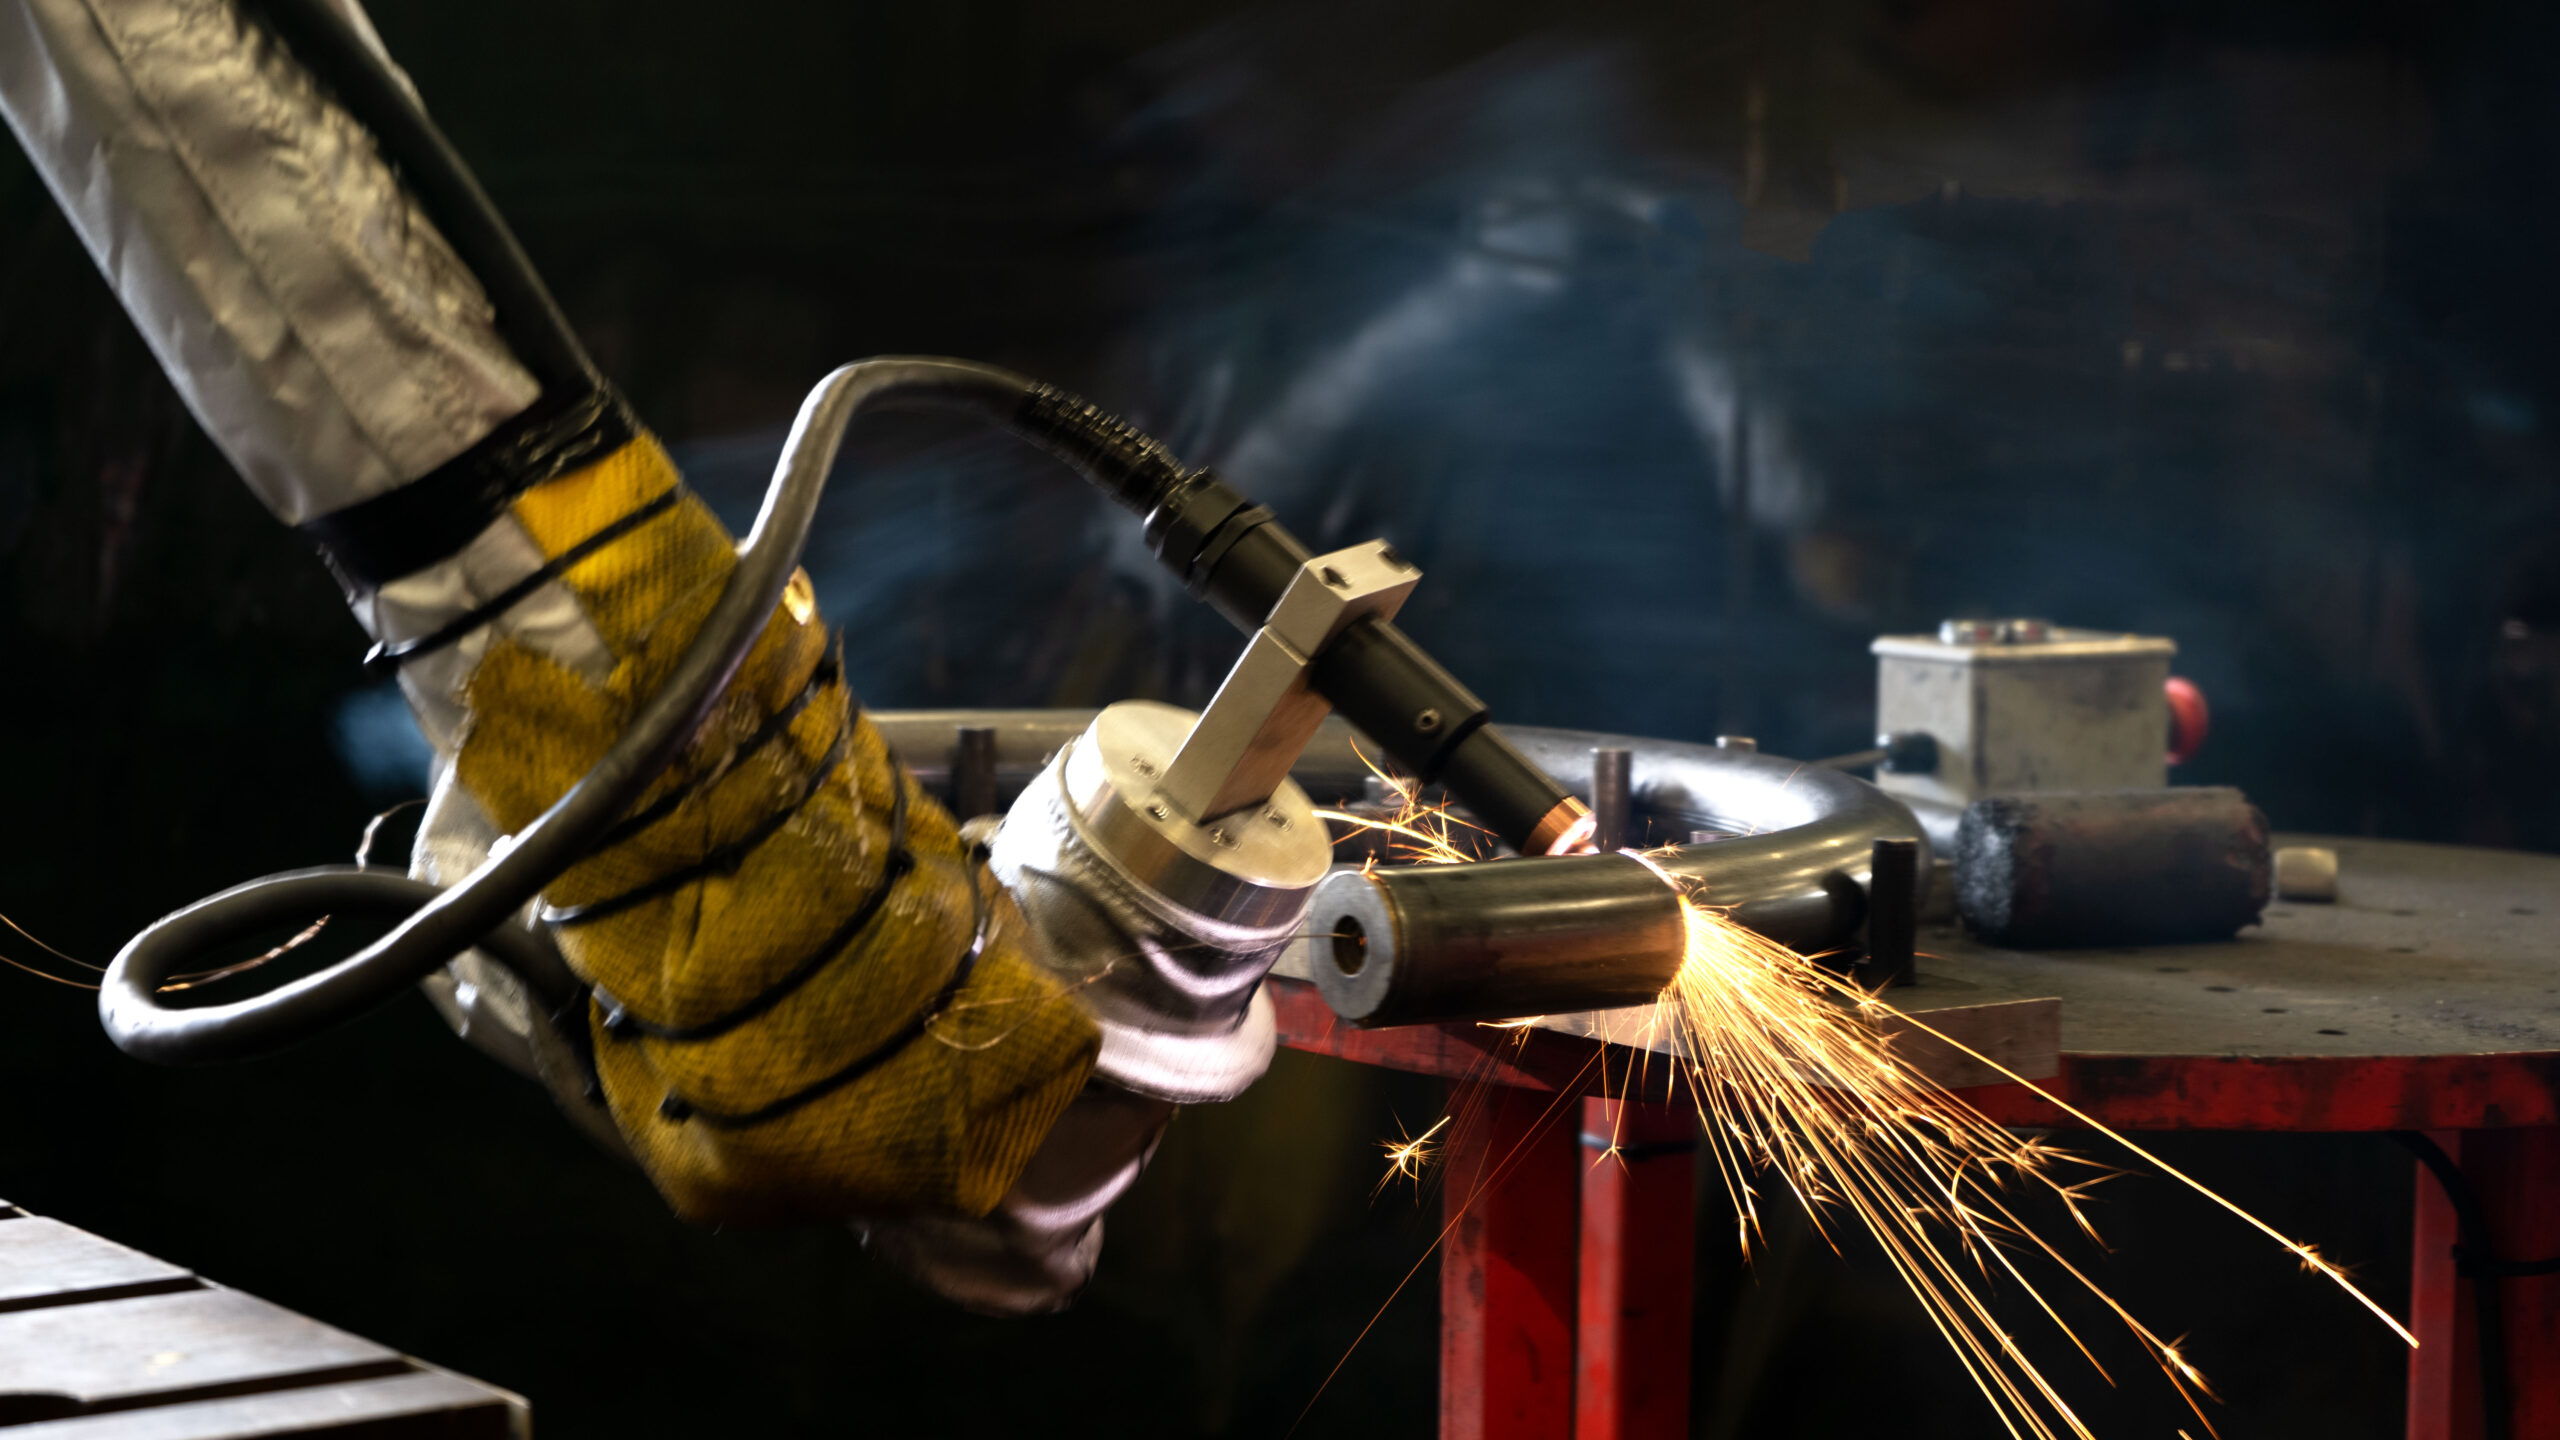 Fabricación Profesional de Metales en Vancouver: Por qué elegir a Aggressive Tube Bending